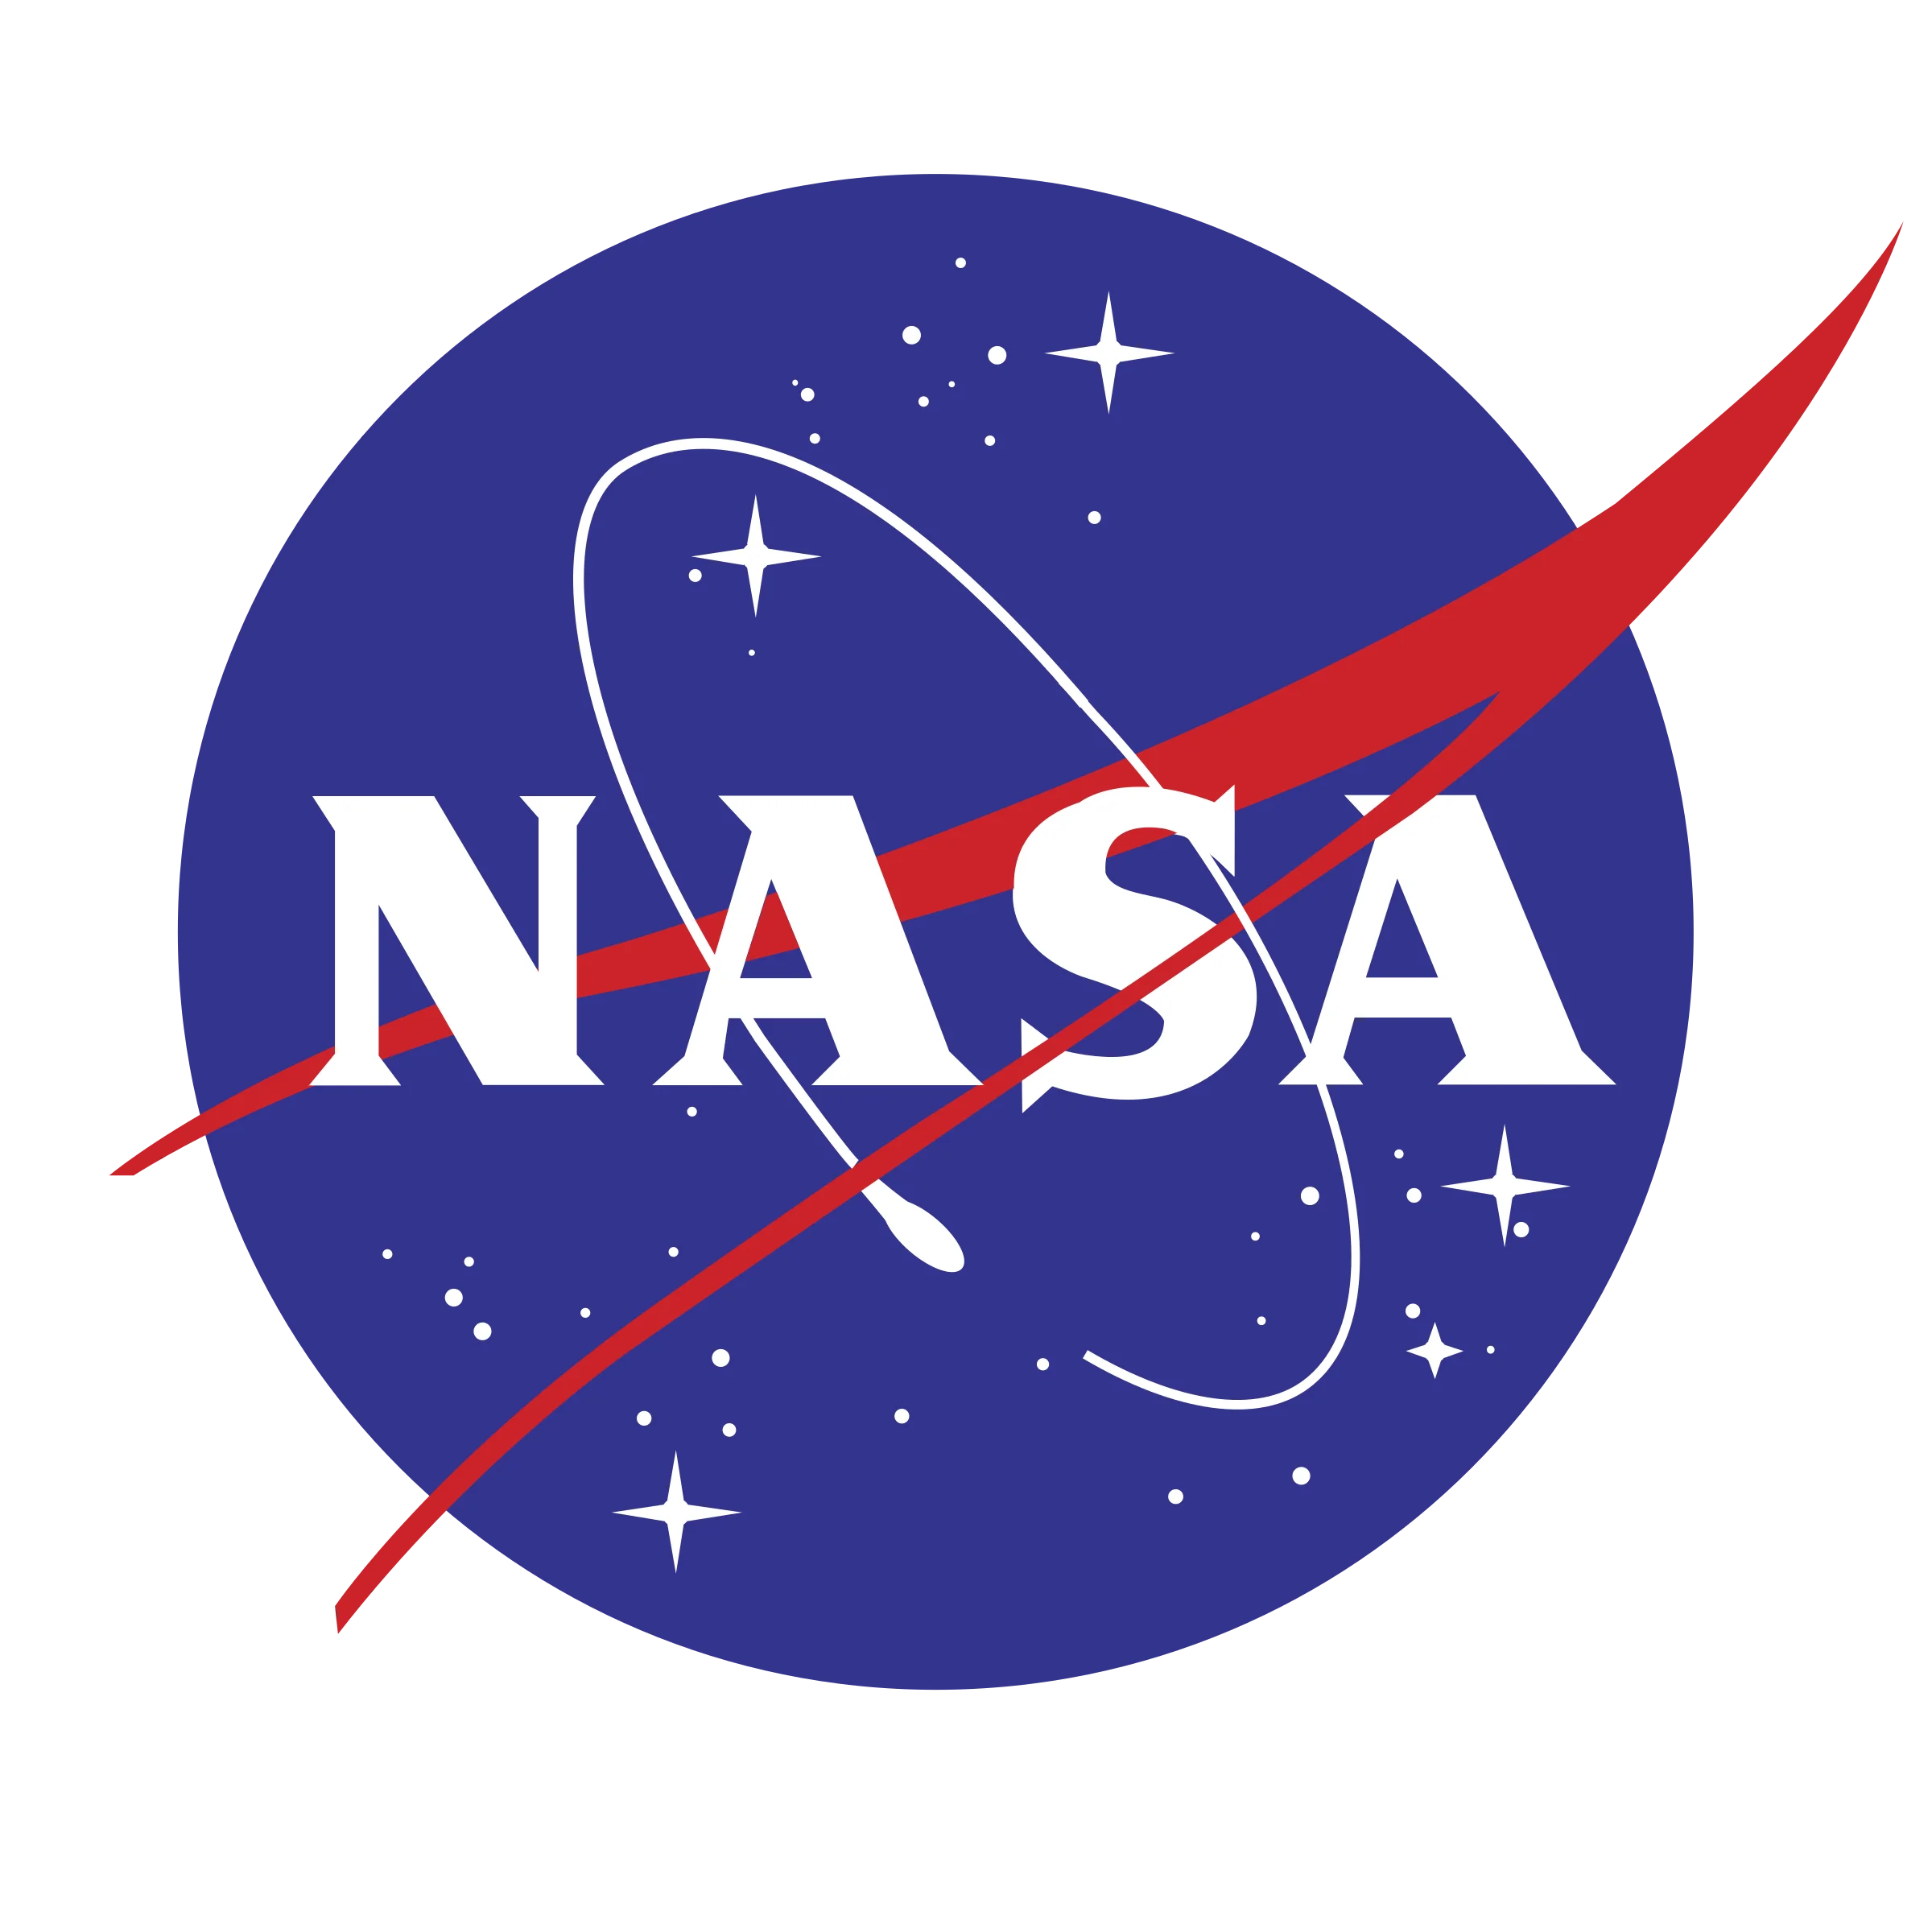 Cliente Drupal OAuth - Logotipo de la NASA